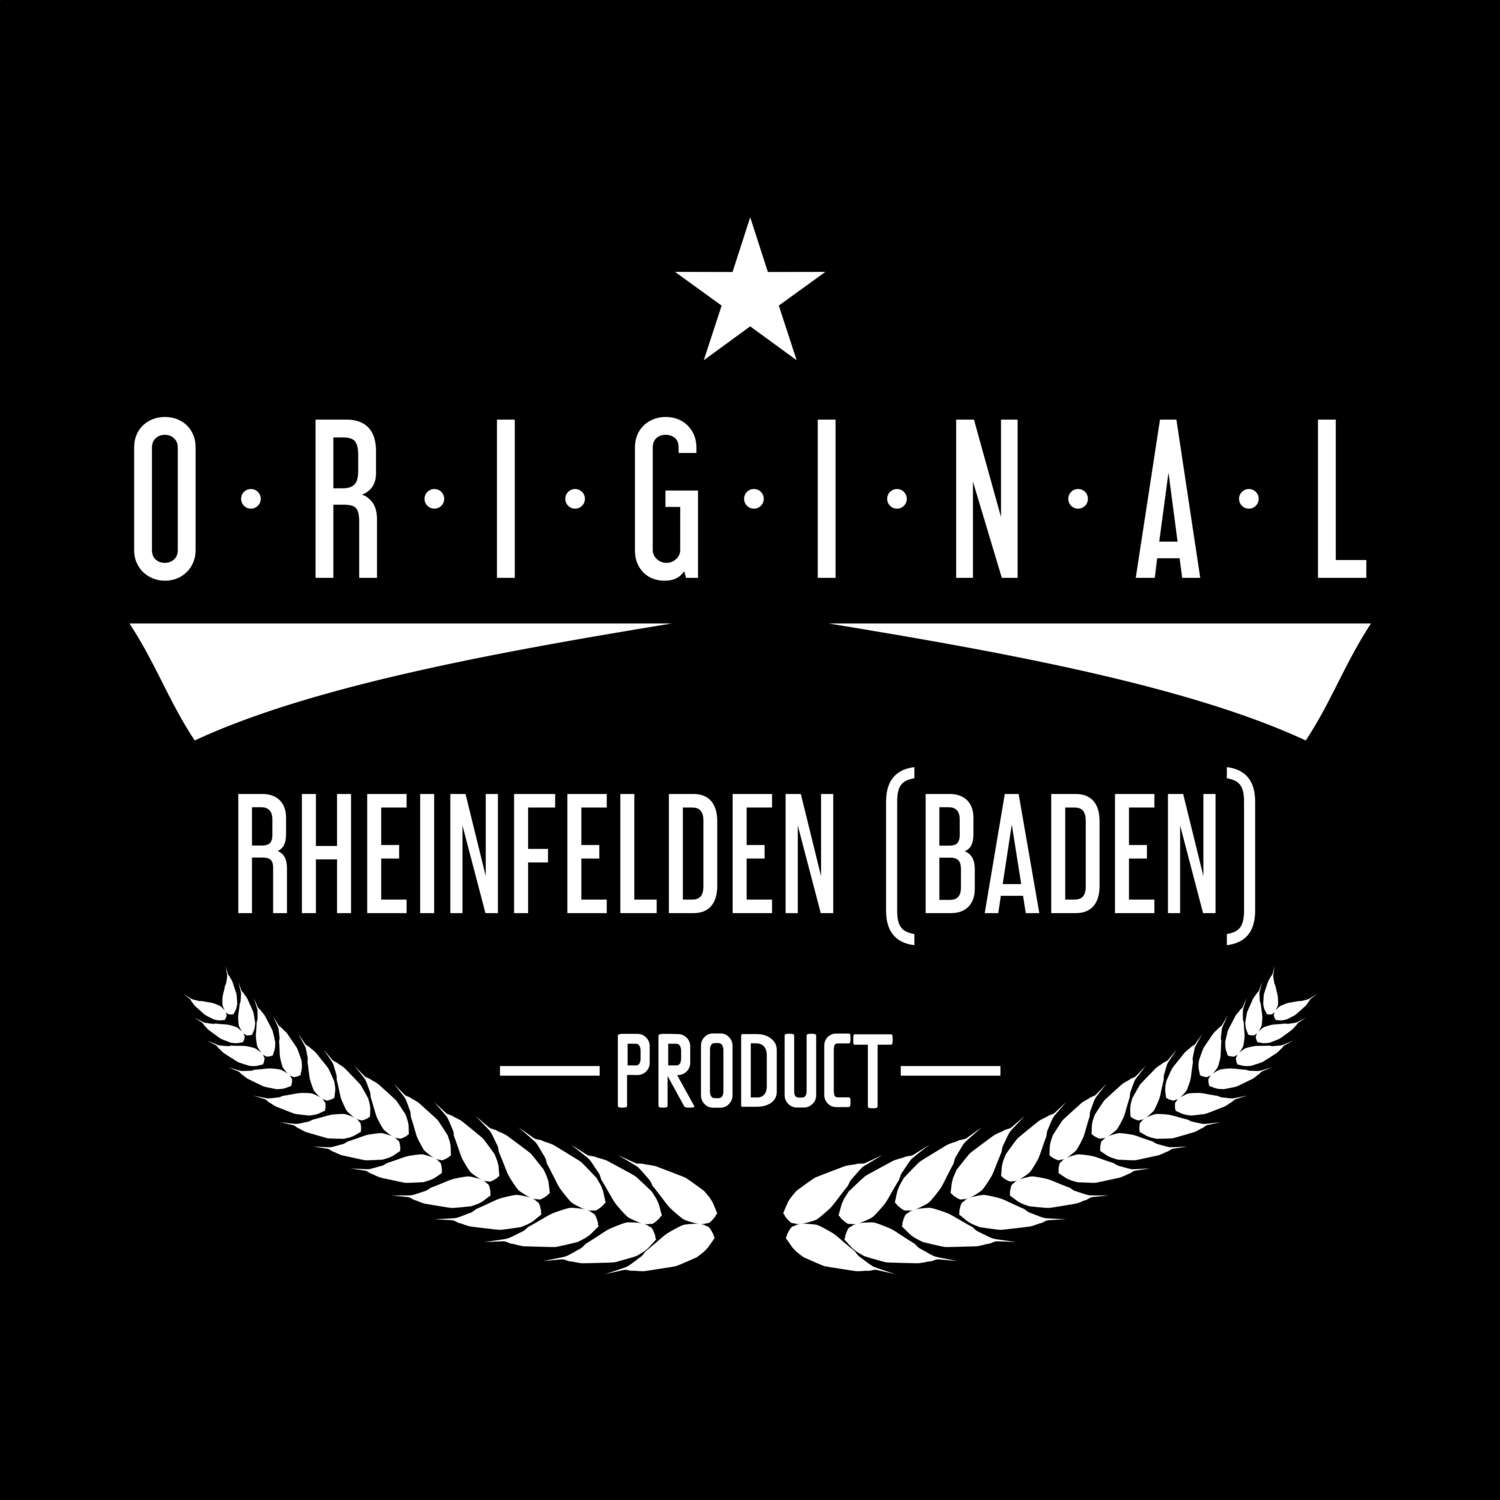 Rheinfelden (Baden) T-Shirt »Original Product«